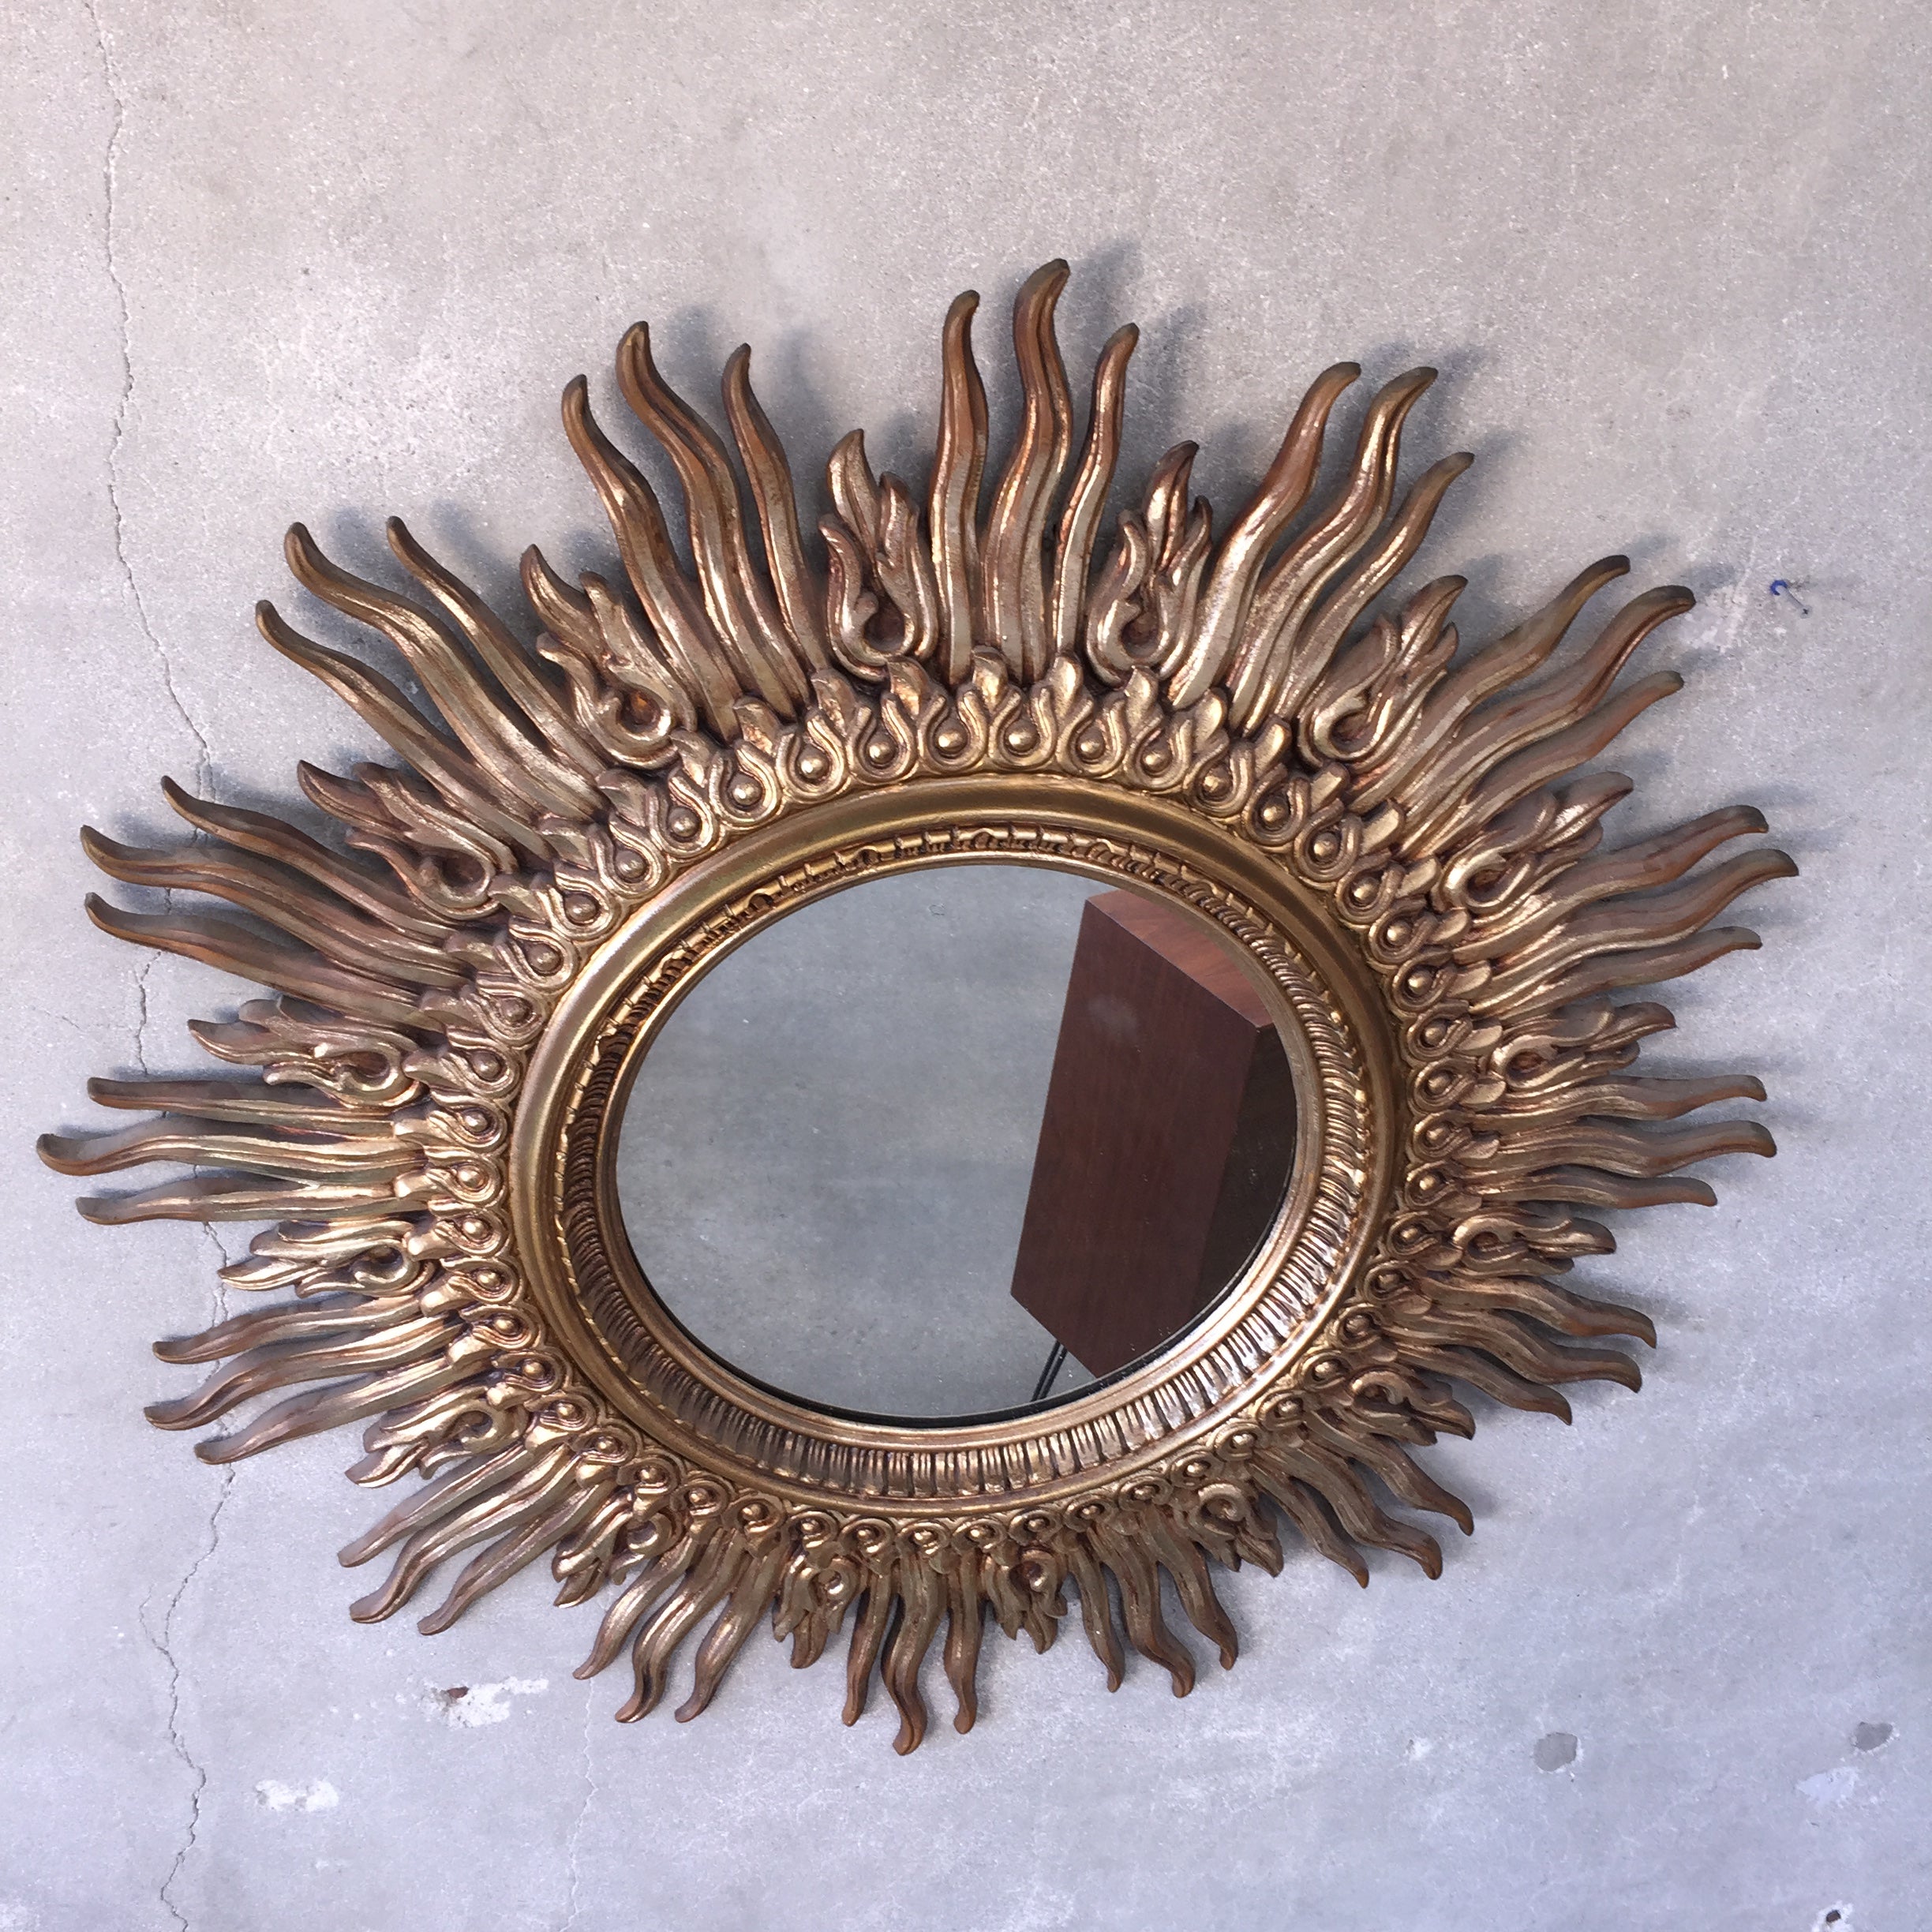 sun mirror